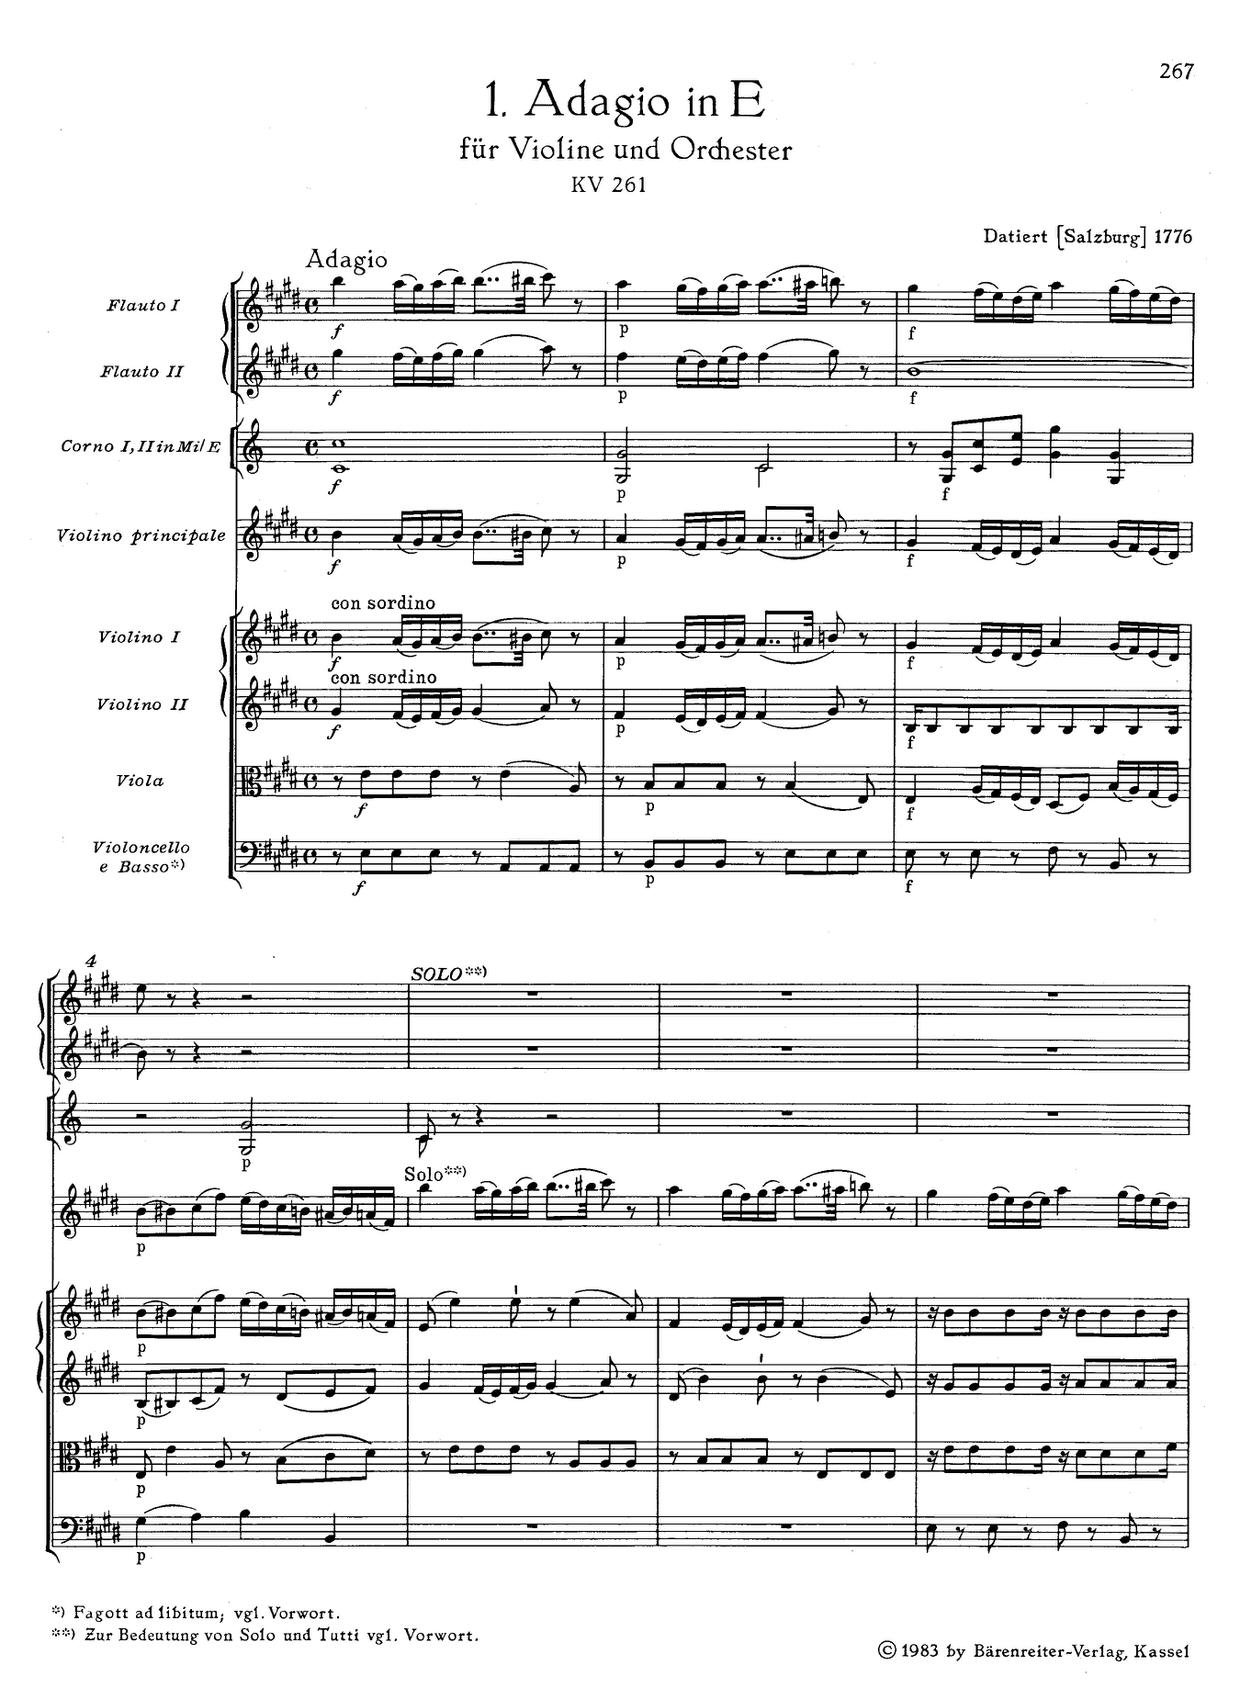 Adagio in E Major, K. 261 Score